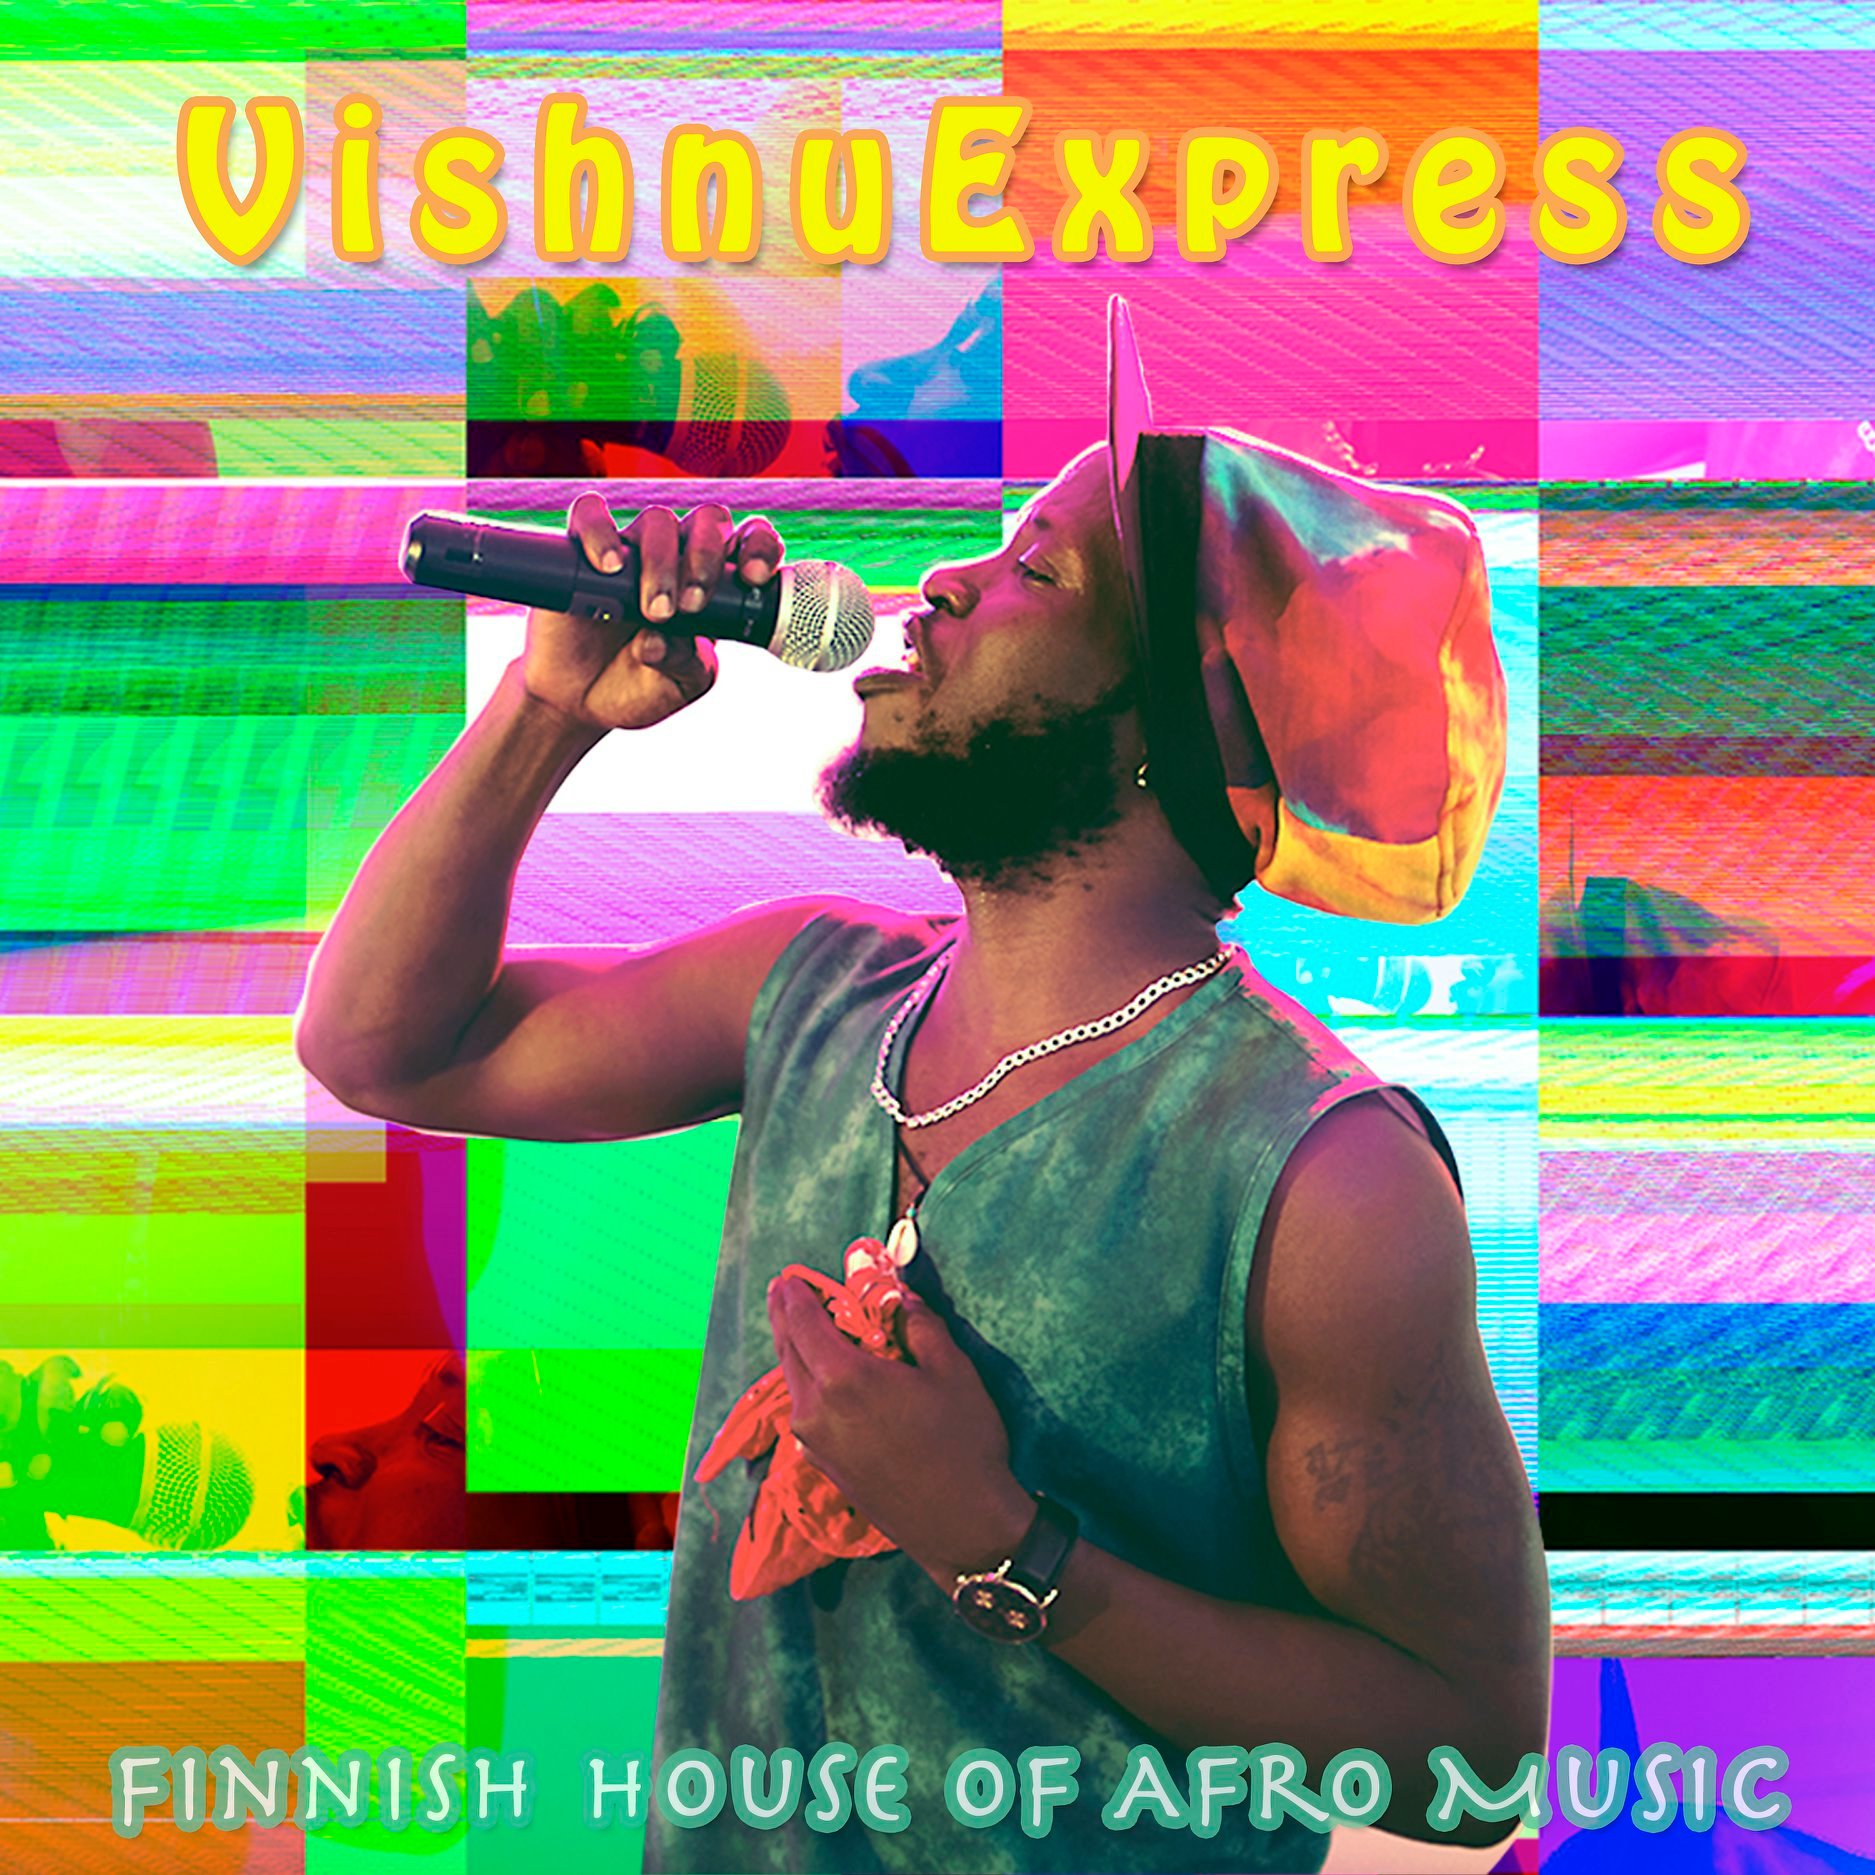 Vishnu Express Release Unique Musical Blend